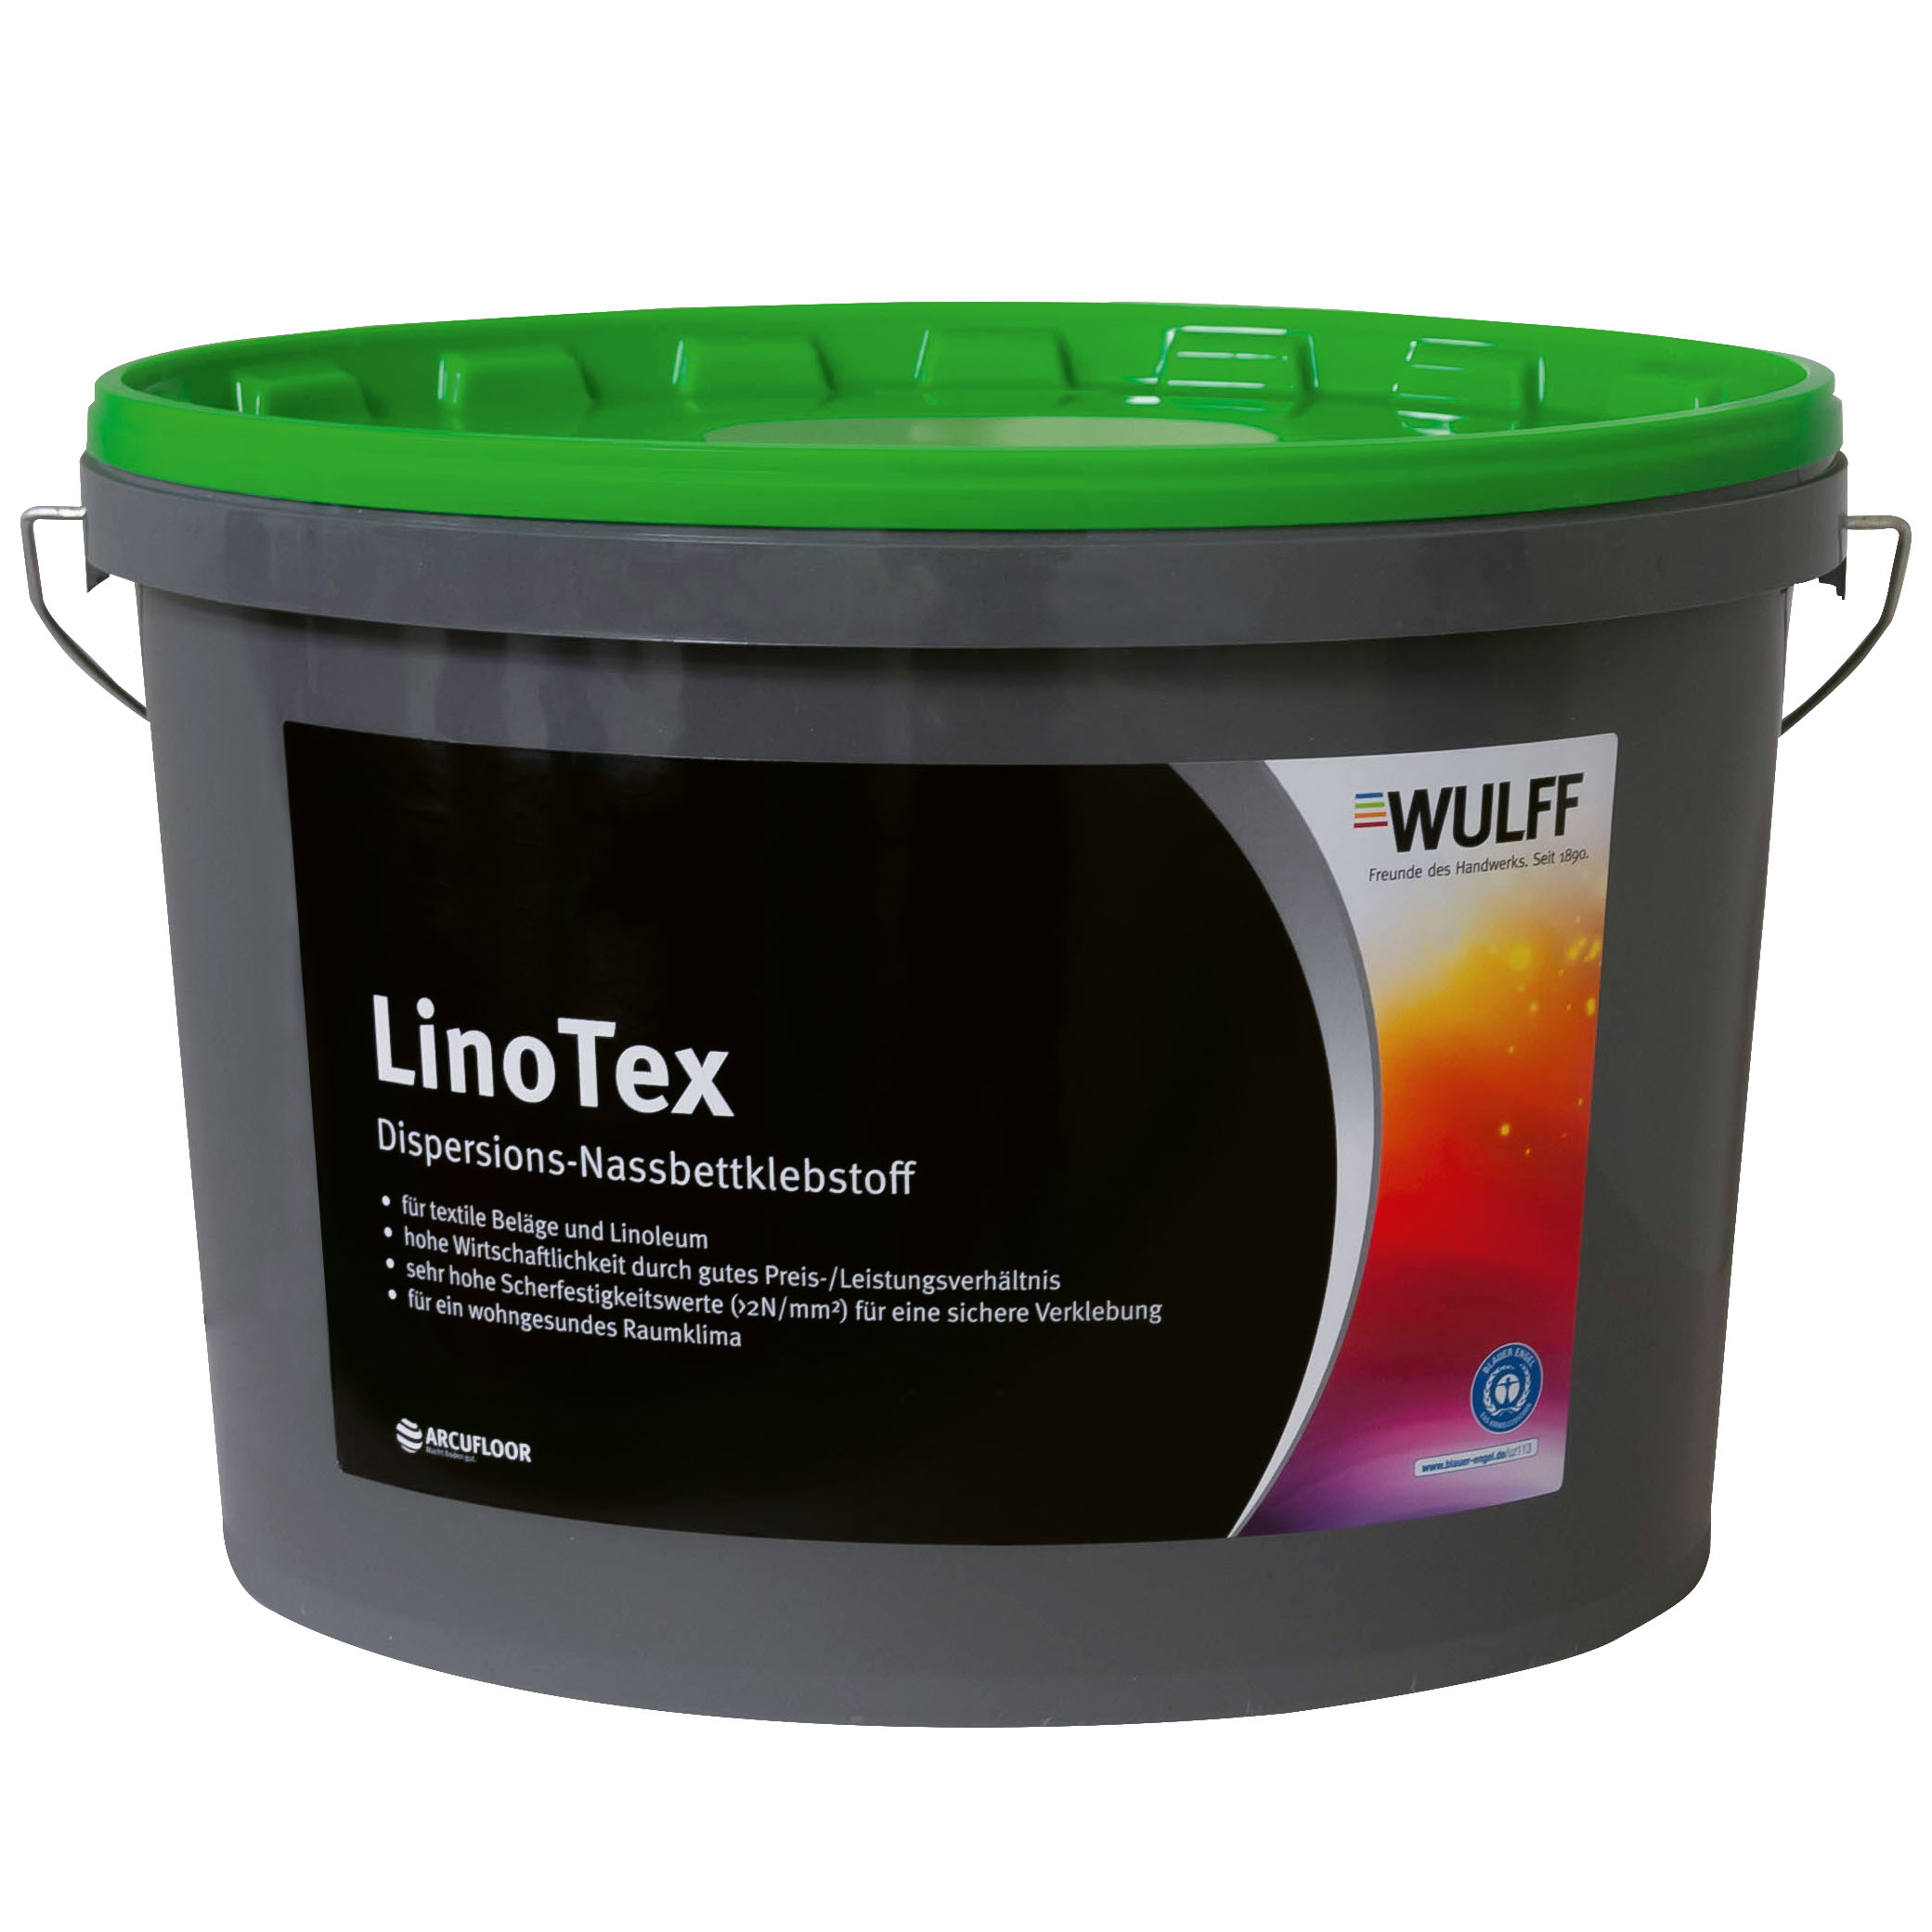 LinoTex